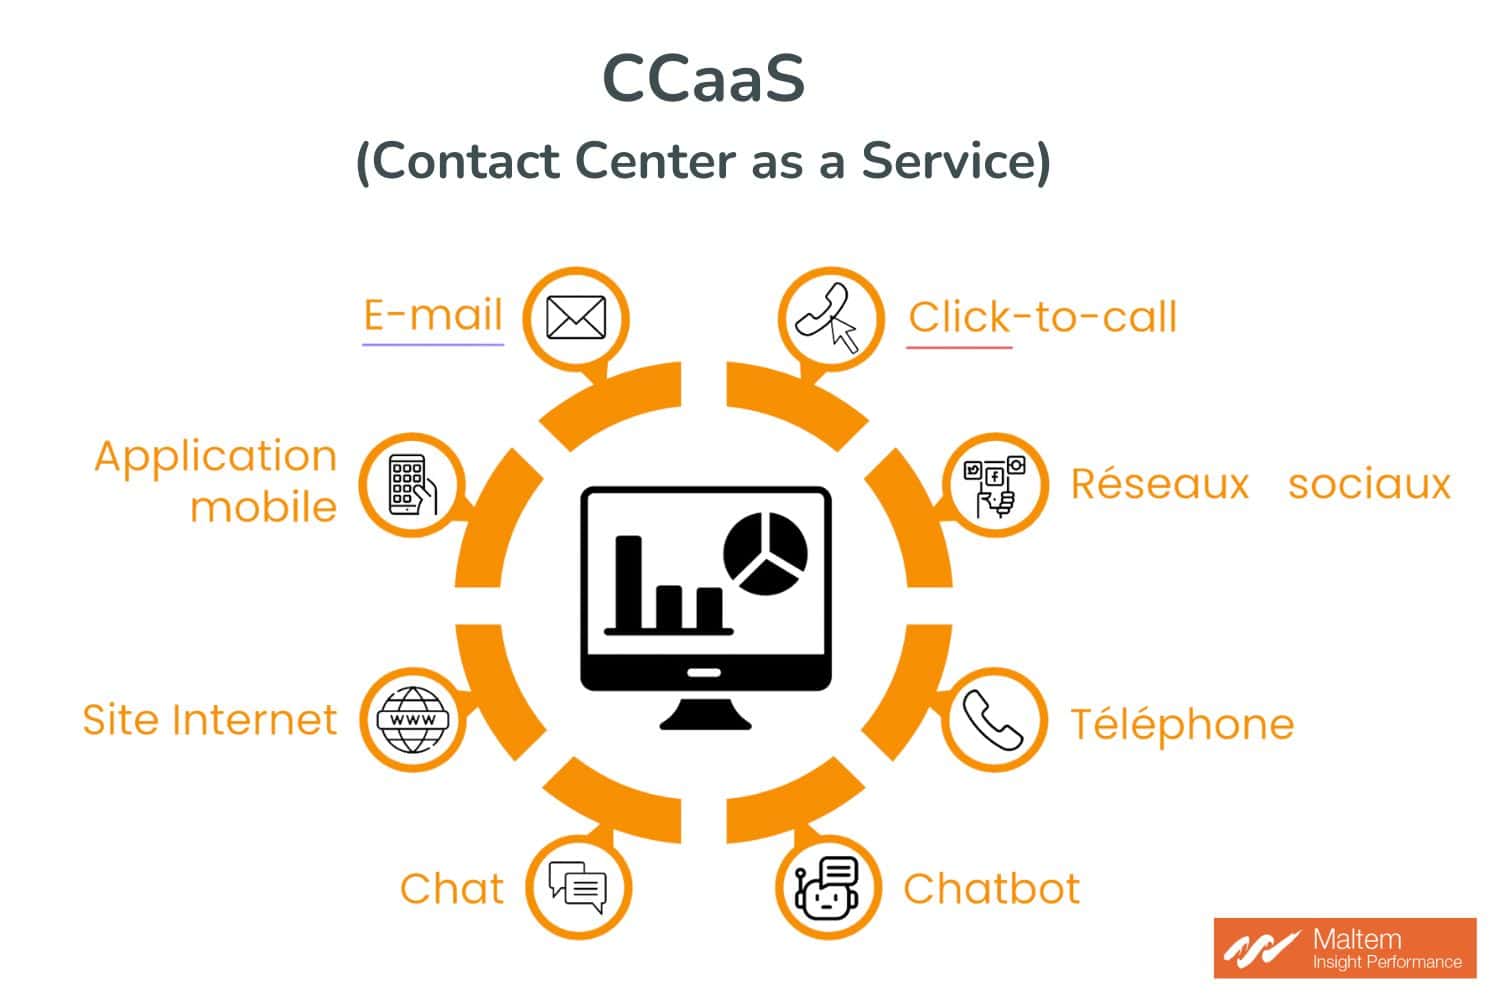 Le CCaaS, centralise sur un seul tableau de bord vos multiples canaux de contact digitaux pour une communication fluide et intégrée